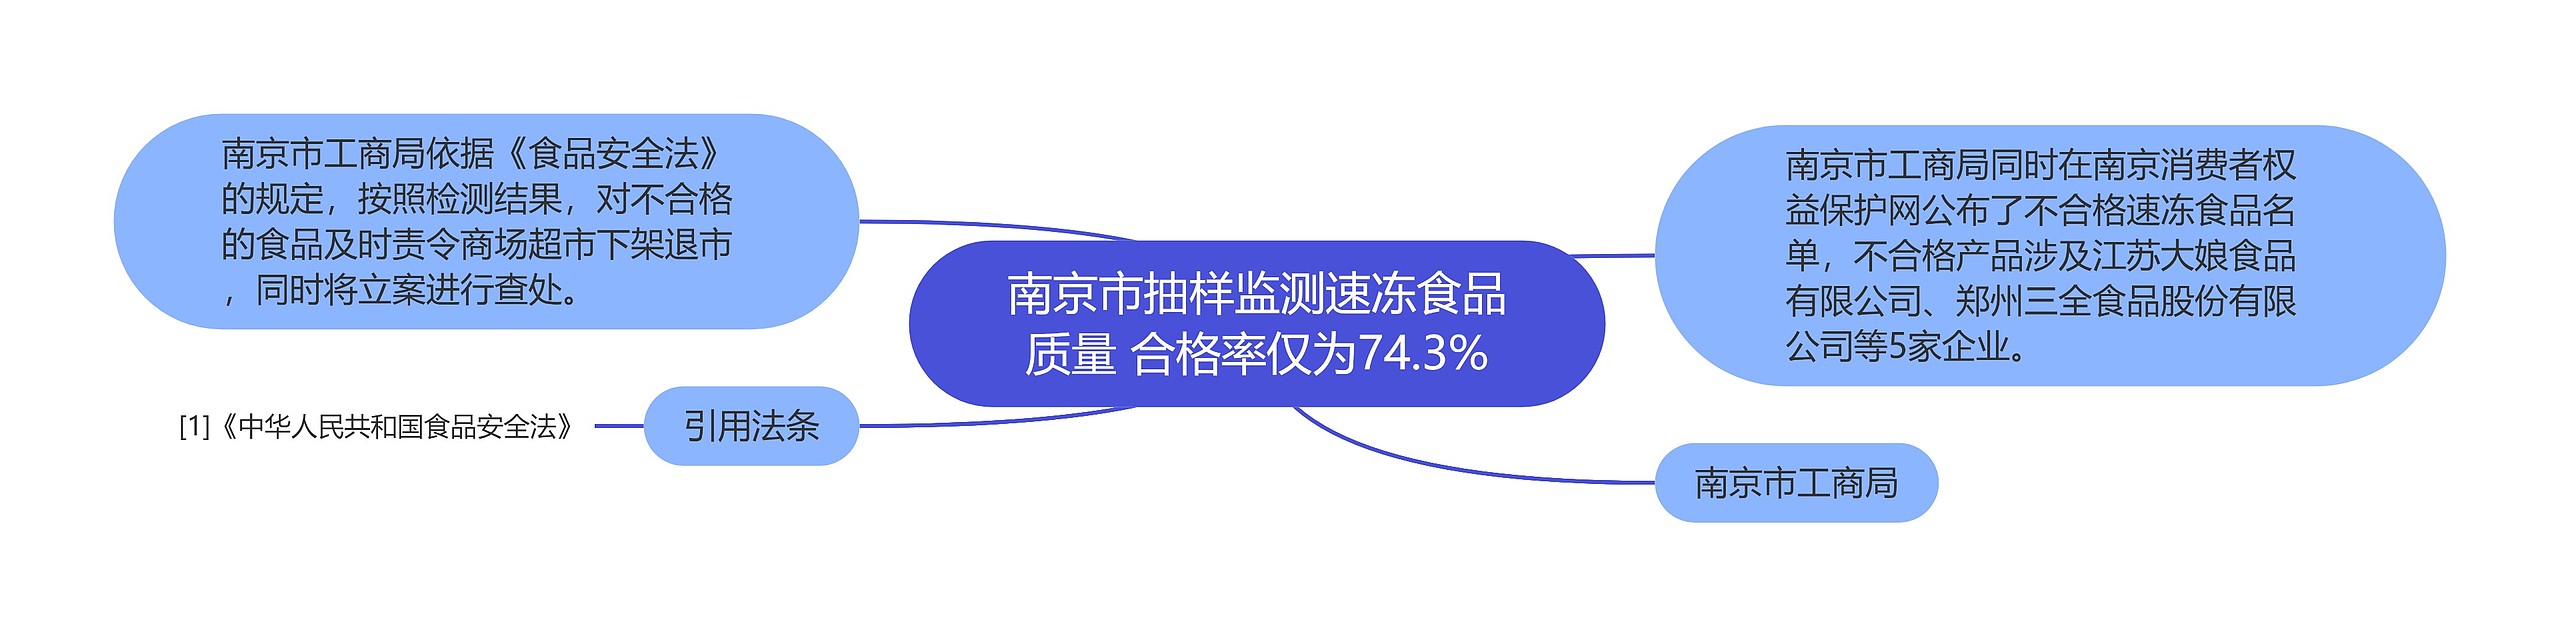 南京市抽样监测速冻食品质量 合格率仅为74.3%思维导图